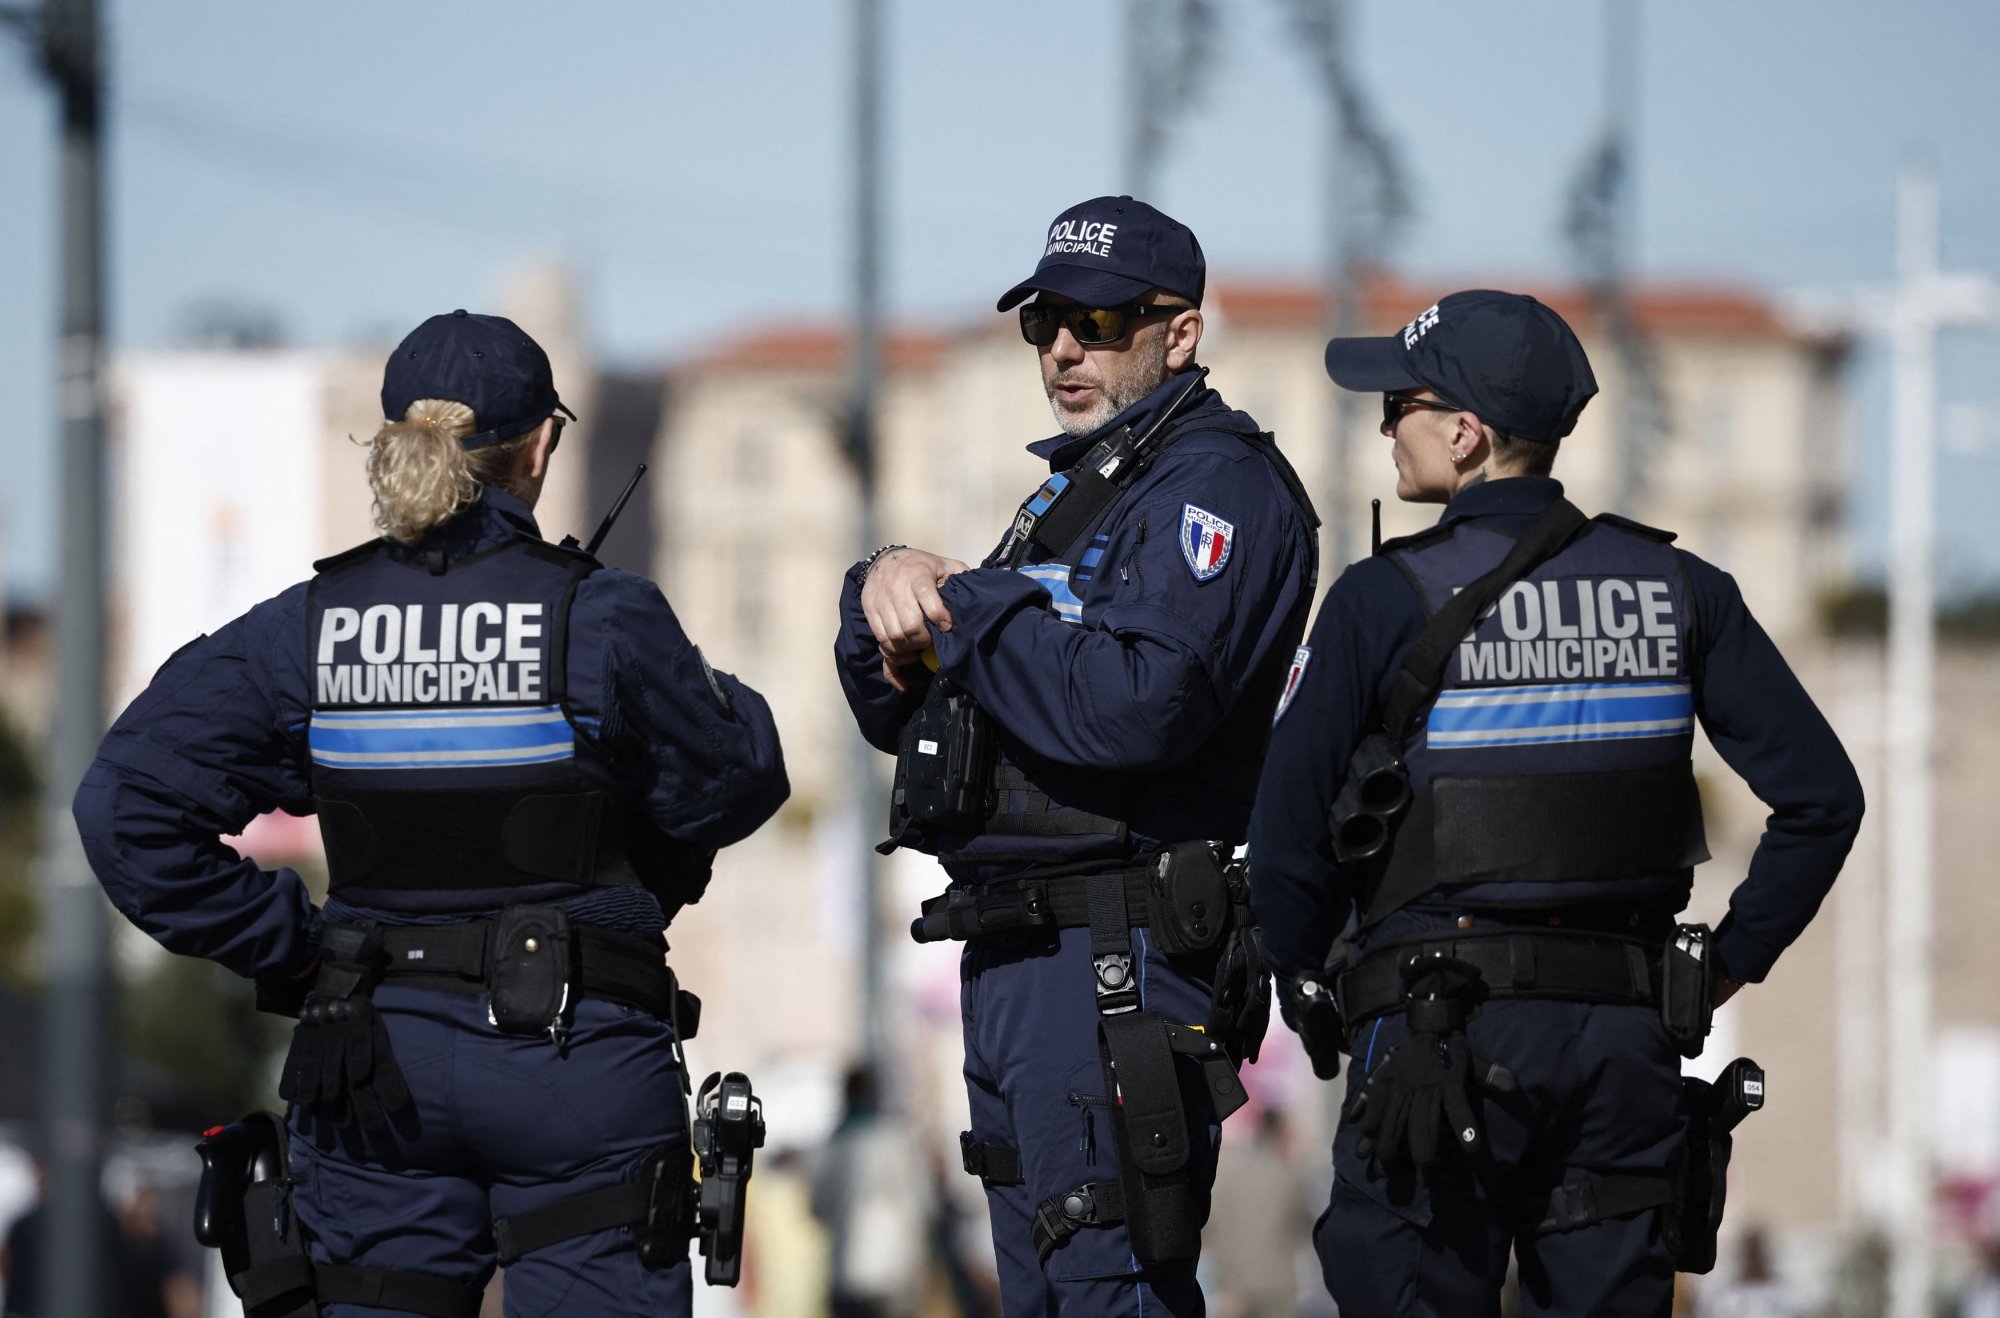 Παρίσι: Δύο αστυνομικοί σοβαρά τραυματίες από ένοπλη επίθεση υπόπτου μέσα στο τμήμα